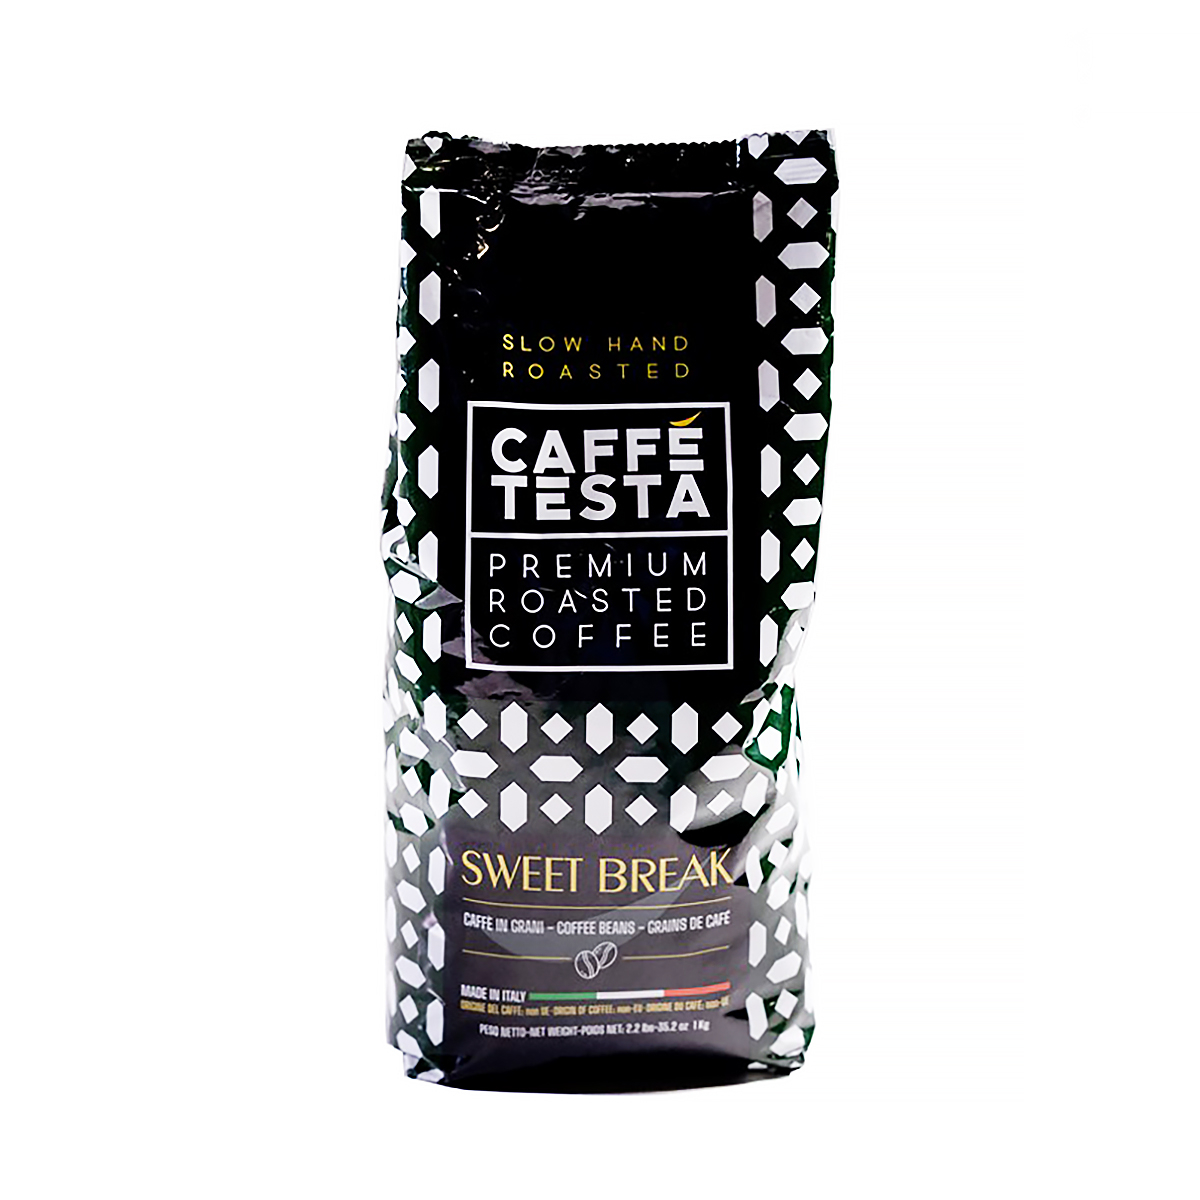 Кофе в зернах Caffe Testa Sweet Break, 1 кг кофе в зернах jacobs бариста эспрессо 1000 г